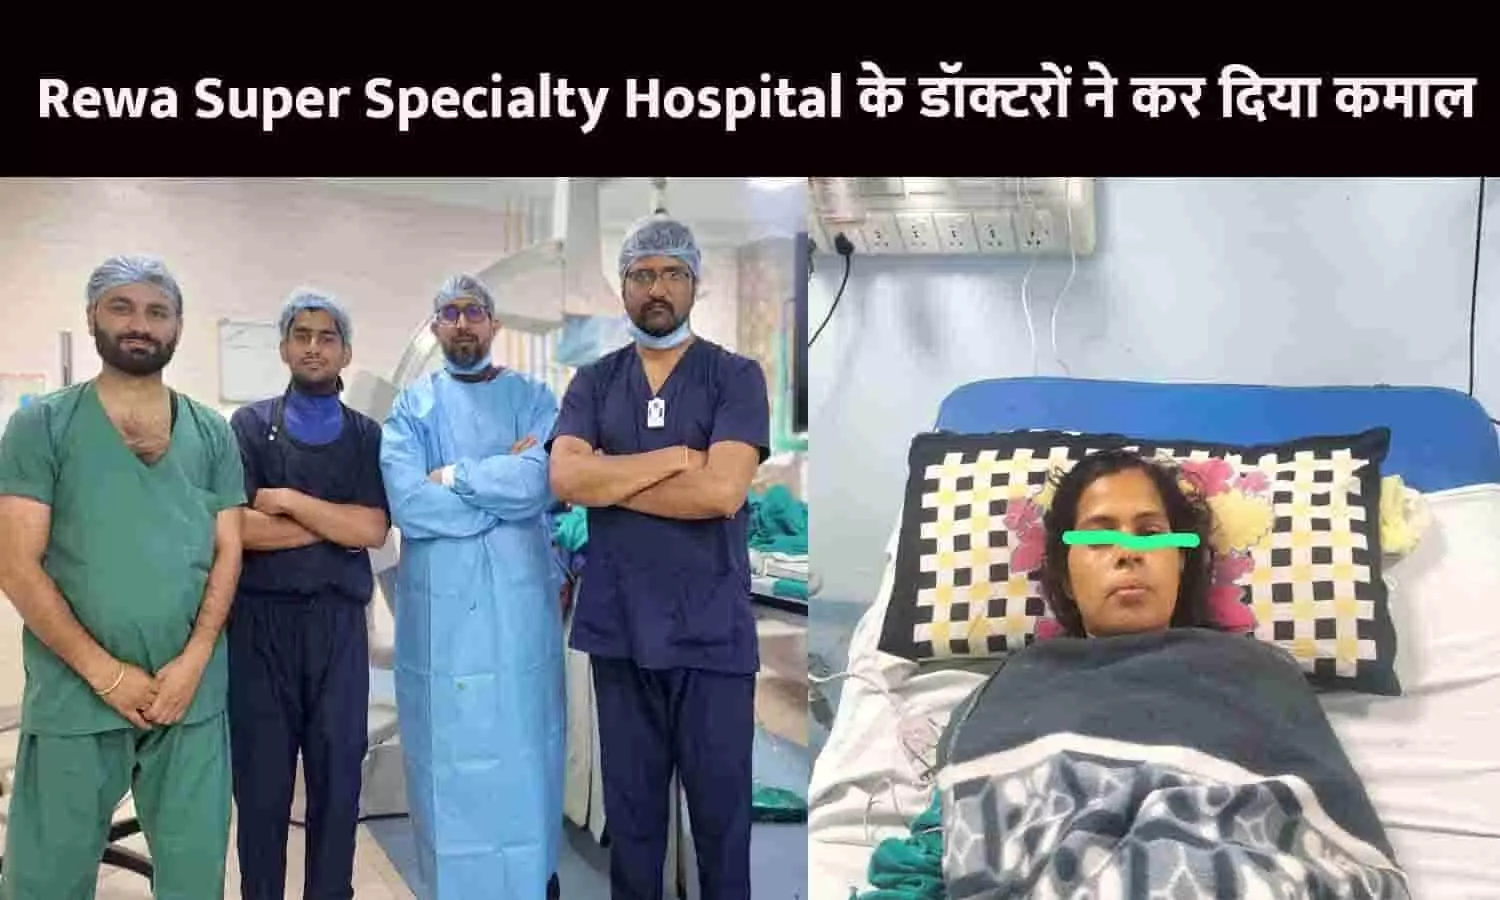 Rewa Super Specialty Hospital के डॉक्टरों ने कर दिया कमाल, गर्भवती महिला की डबल चेम्बर पेसमेकर लगाकर बचाई जान, विदेशो तक हो रही चर्चा